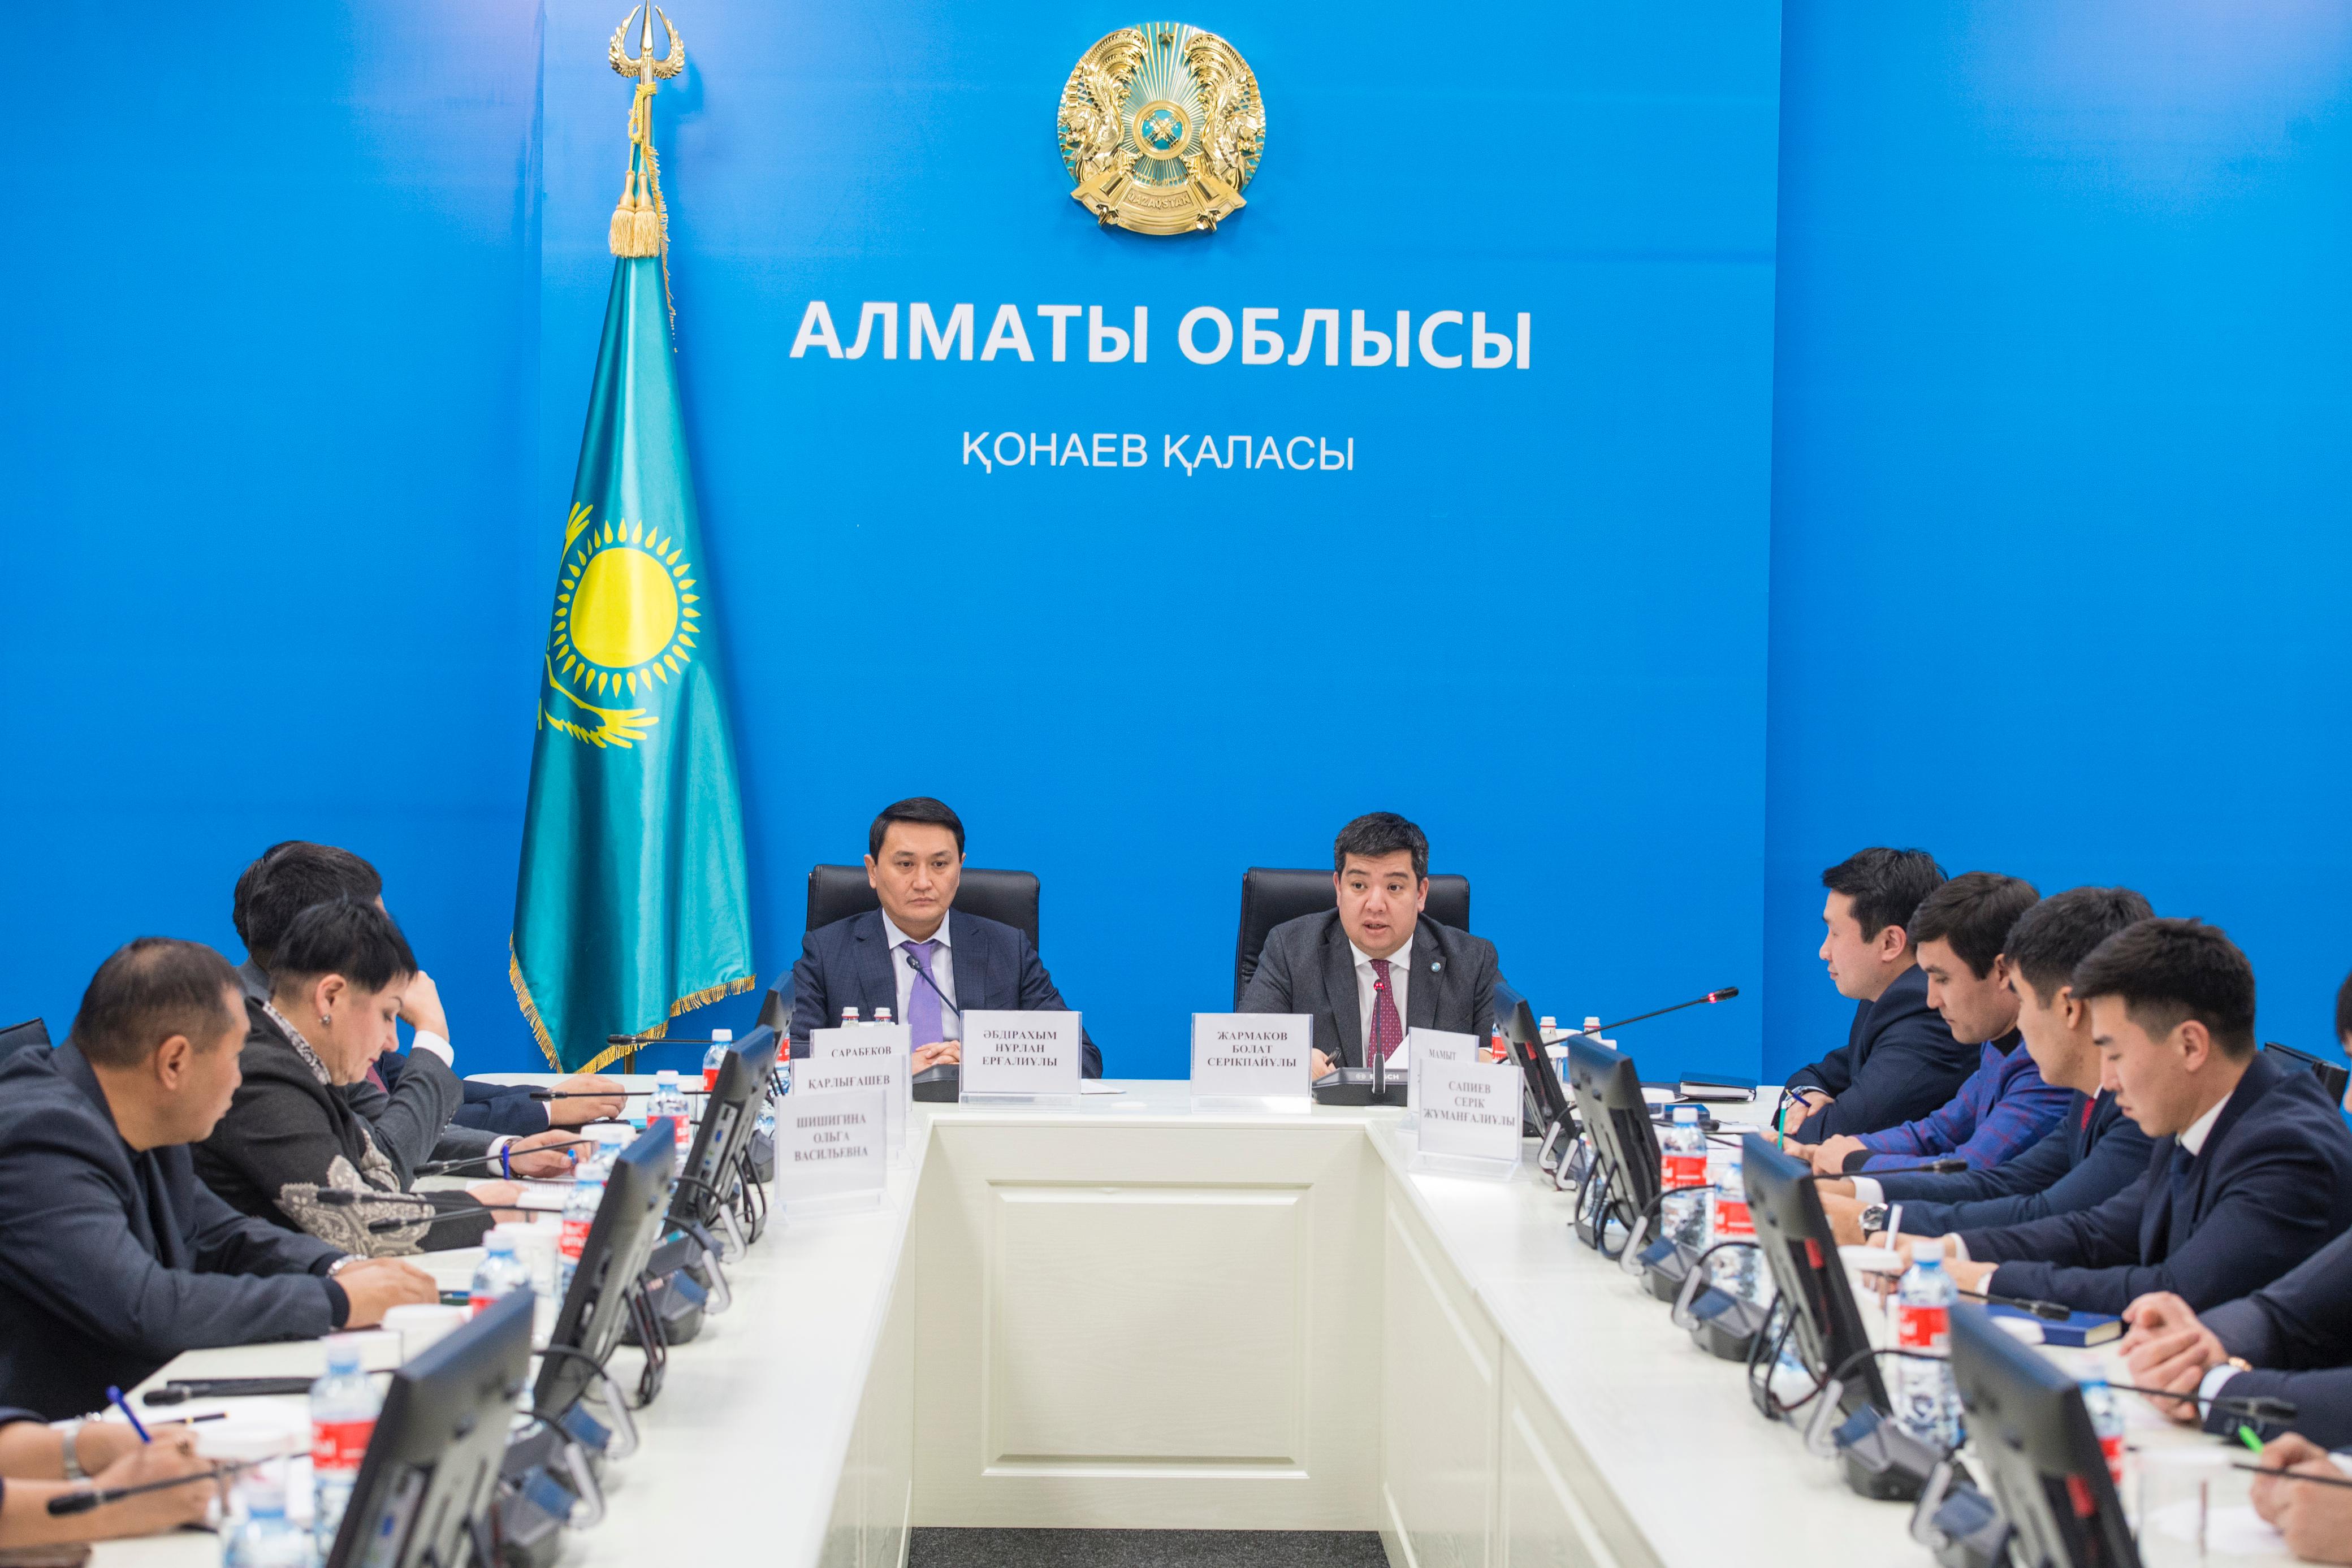 Антикоррупционная служба Алматинской области ведет борьбу с коррупцией в сфере спорта